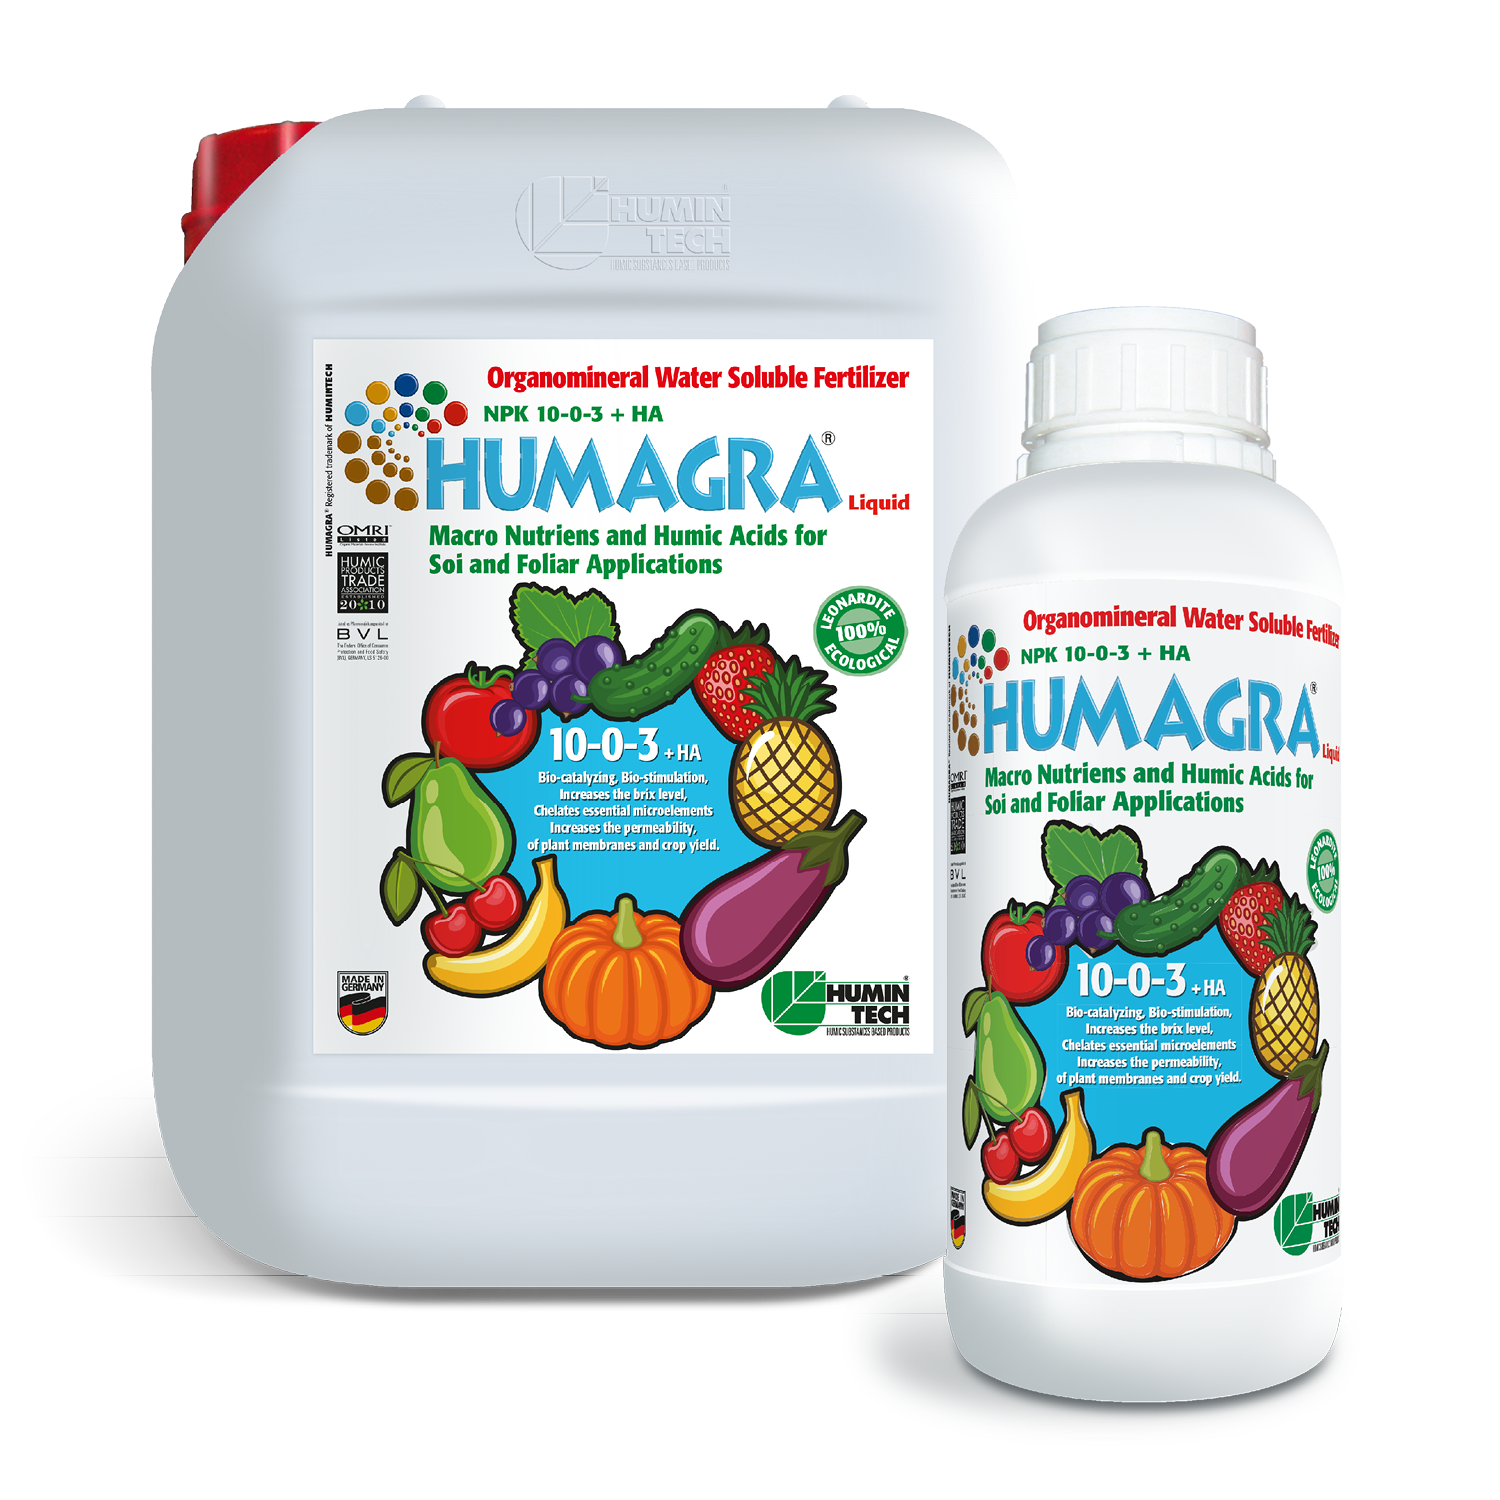 HUMAGRA NPK 10-0-3 + HA Liquid Organomineral Liquid Fertilizer NPK Macronutrients and Humic Acids